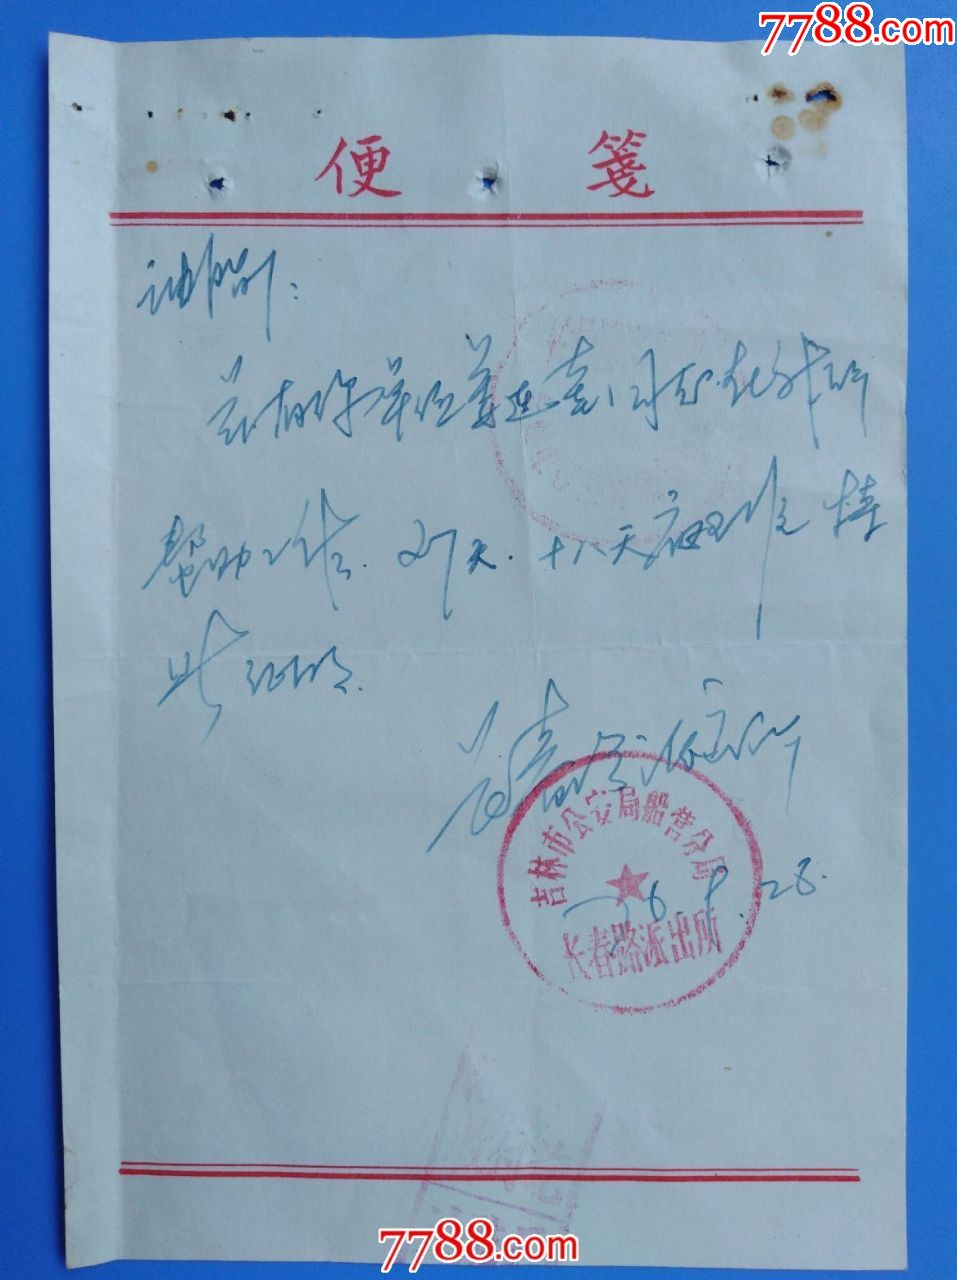 76年9月28日吉林市长春路派出所给借调人员开